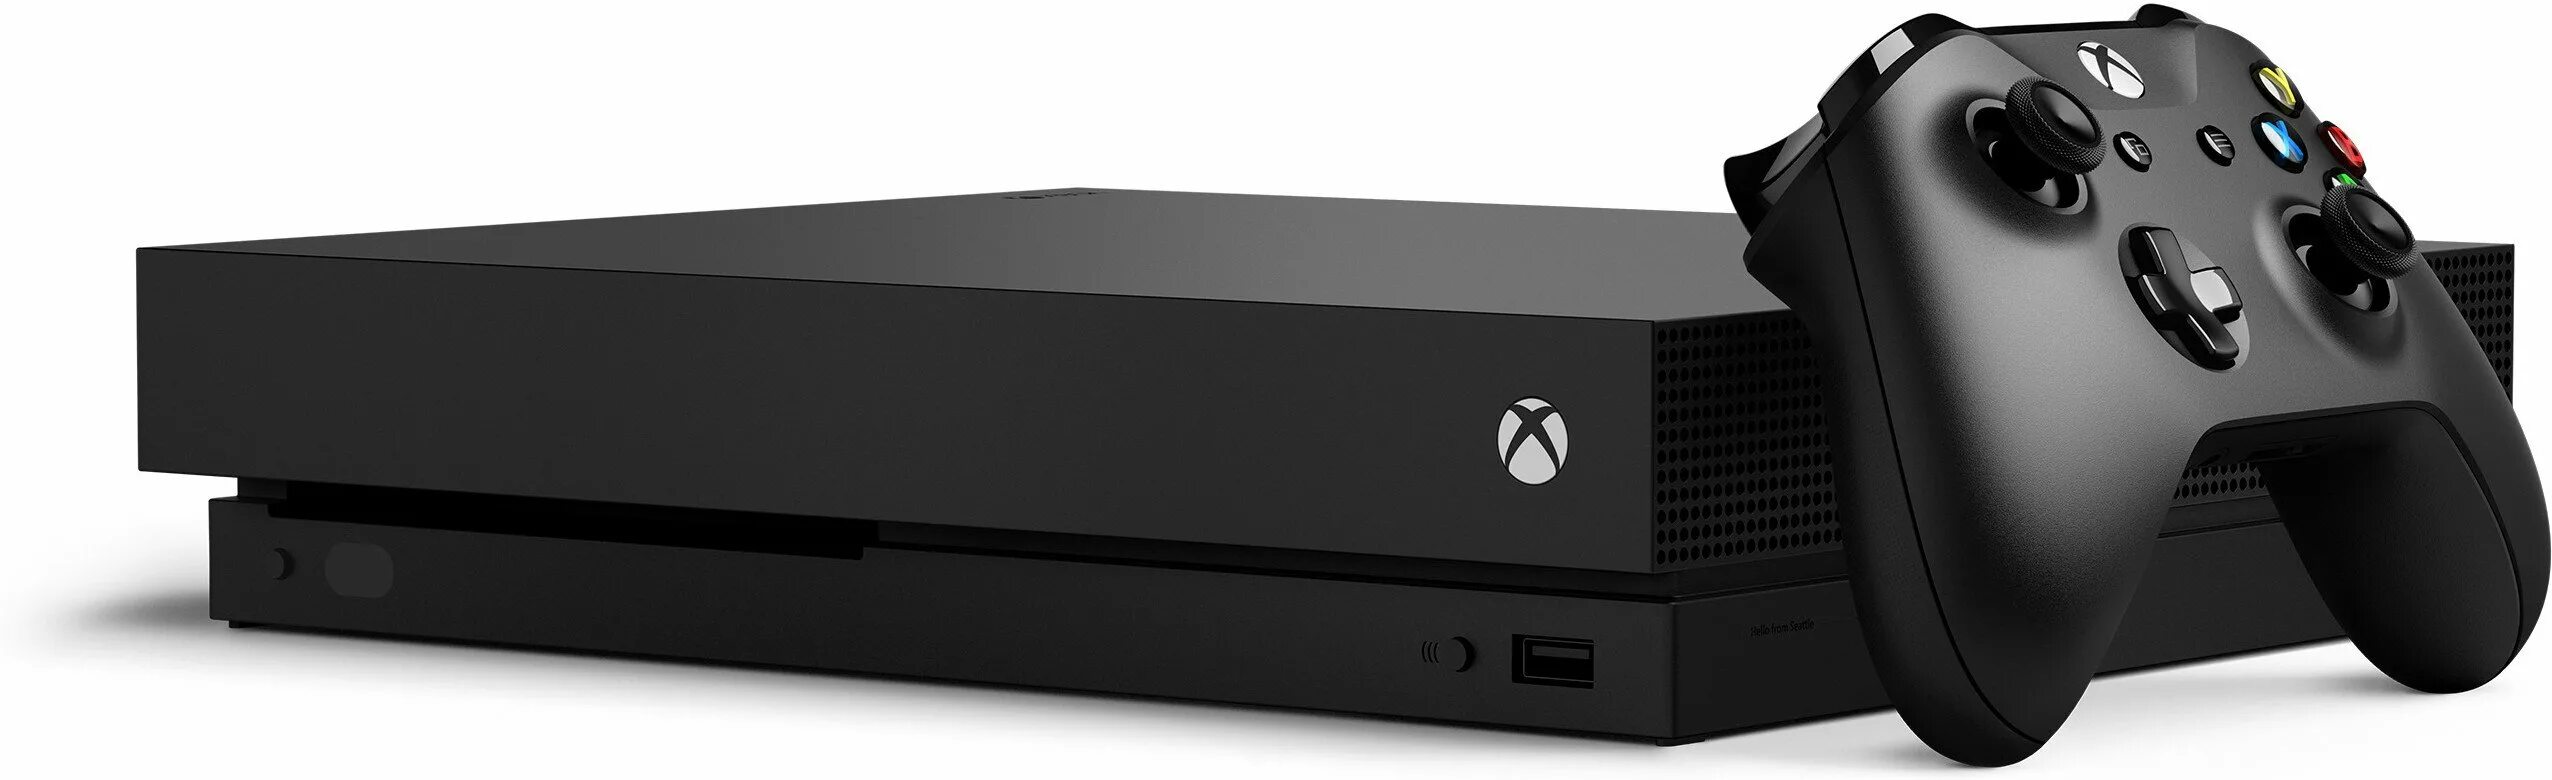 Игровая приставка Microsoft Xbox one x. Xbox one s. Xbox one s 1tb all Digital Edition. Xbox one 2013. Xbox x покупка